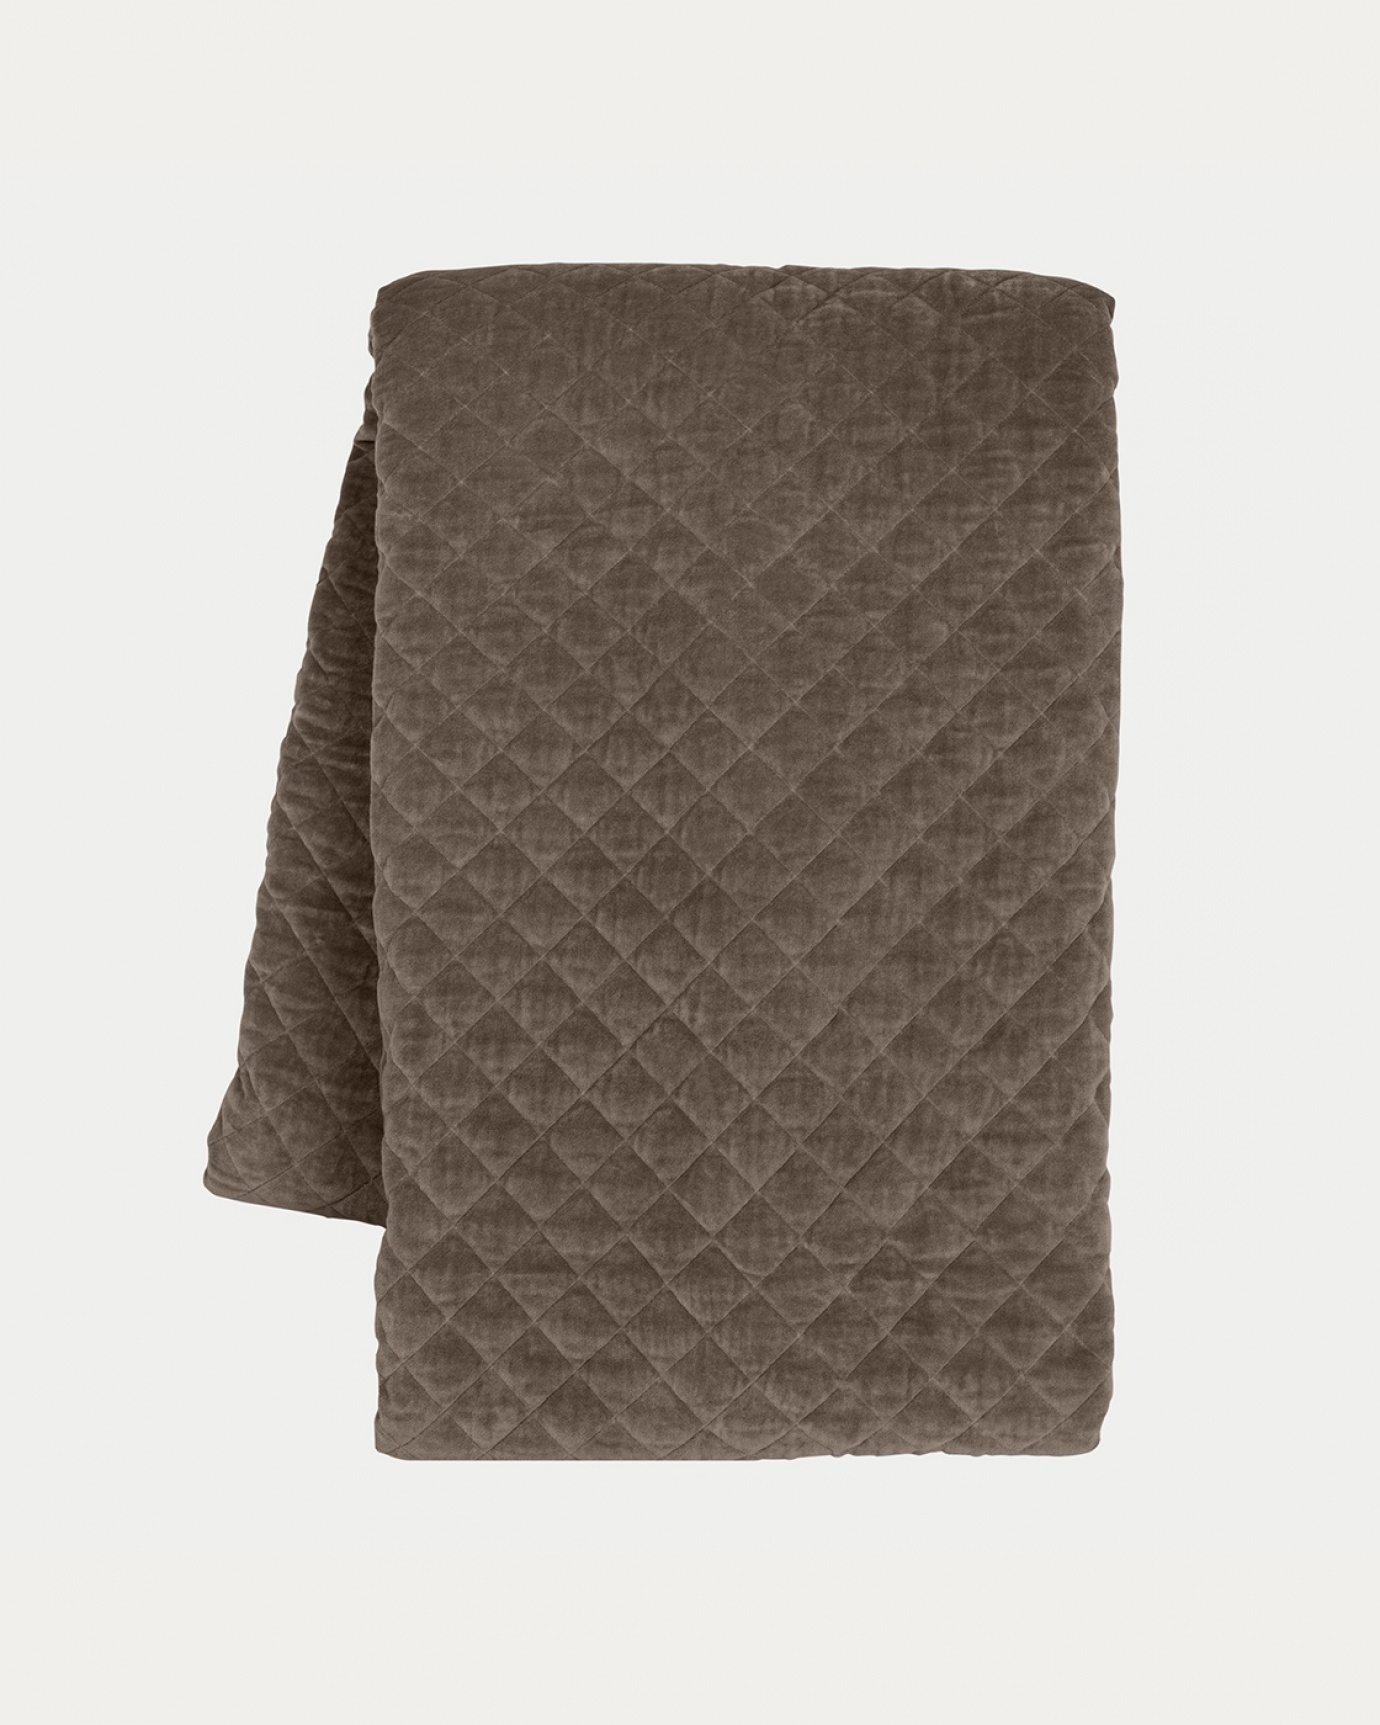 Produktbild maulwurfbraun Tagesdecke PICCOLO aus weichem Baumwollsamt für Einzelbett von LINUM DESIGN. Größe 170x260 cm.